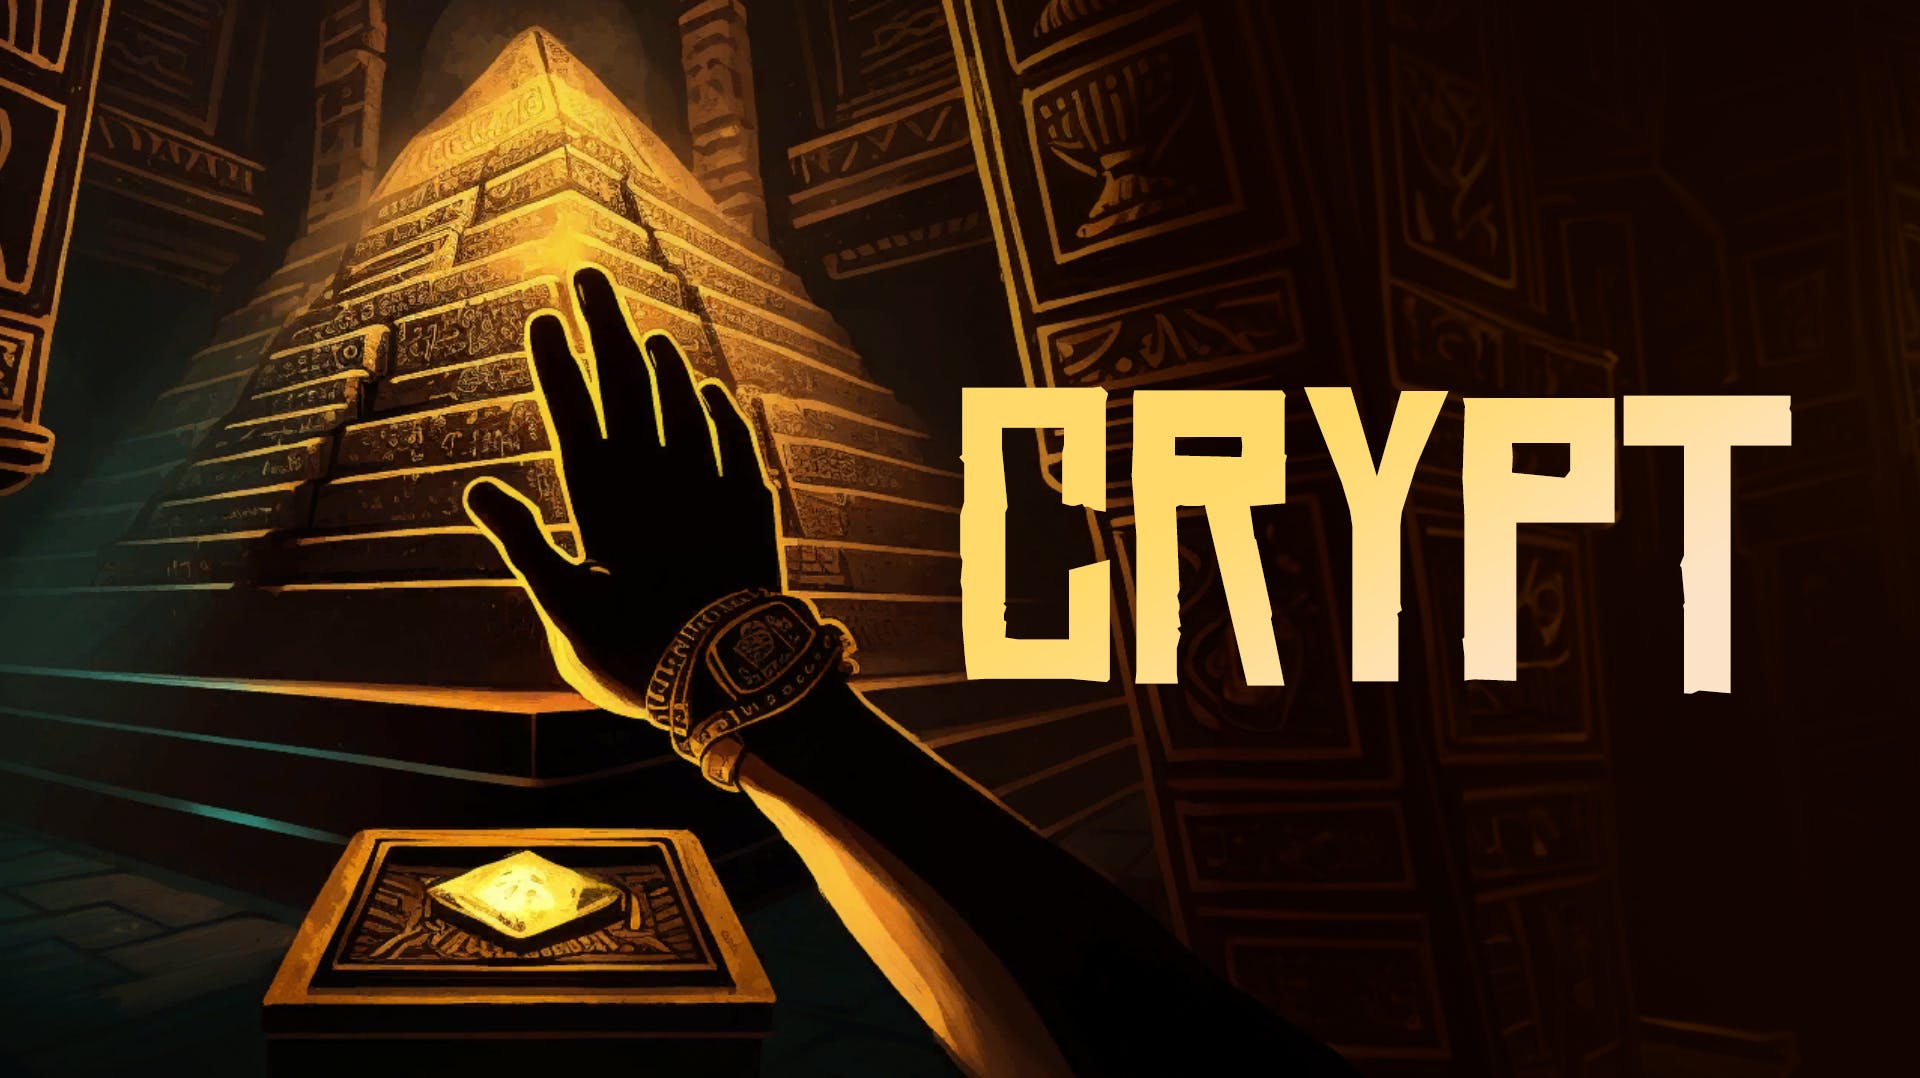 Crazy Crypt Escape